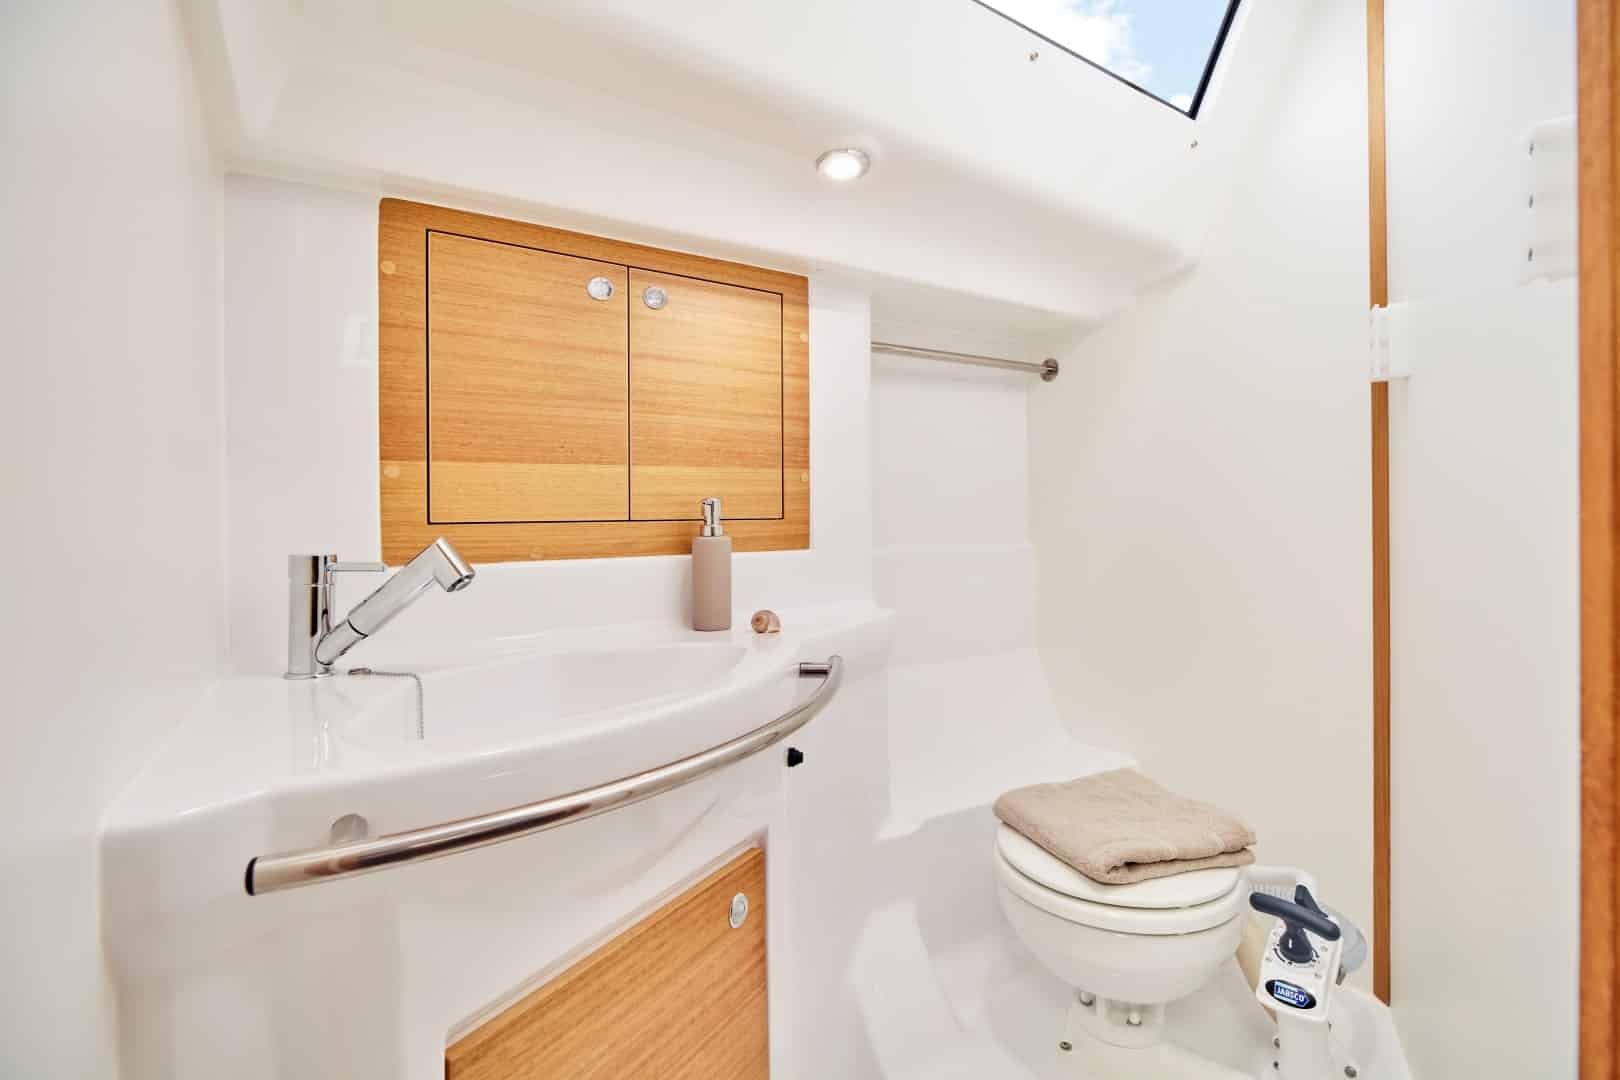 Ein modernes, kompaktes Badezimmer mit Holzschrank, weißem Waschbecken und Toilette. Ein kleines Handtuch hängt neben dem Waschbecken und ein Oberlicht erhellt den Raum an Bord der Segelyacht.